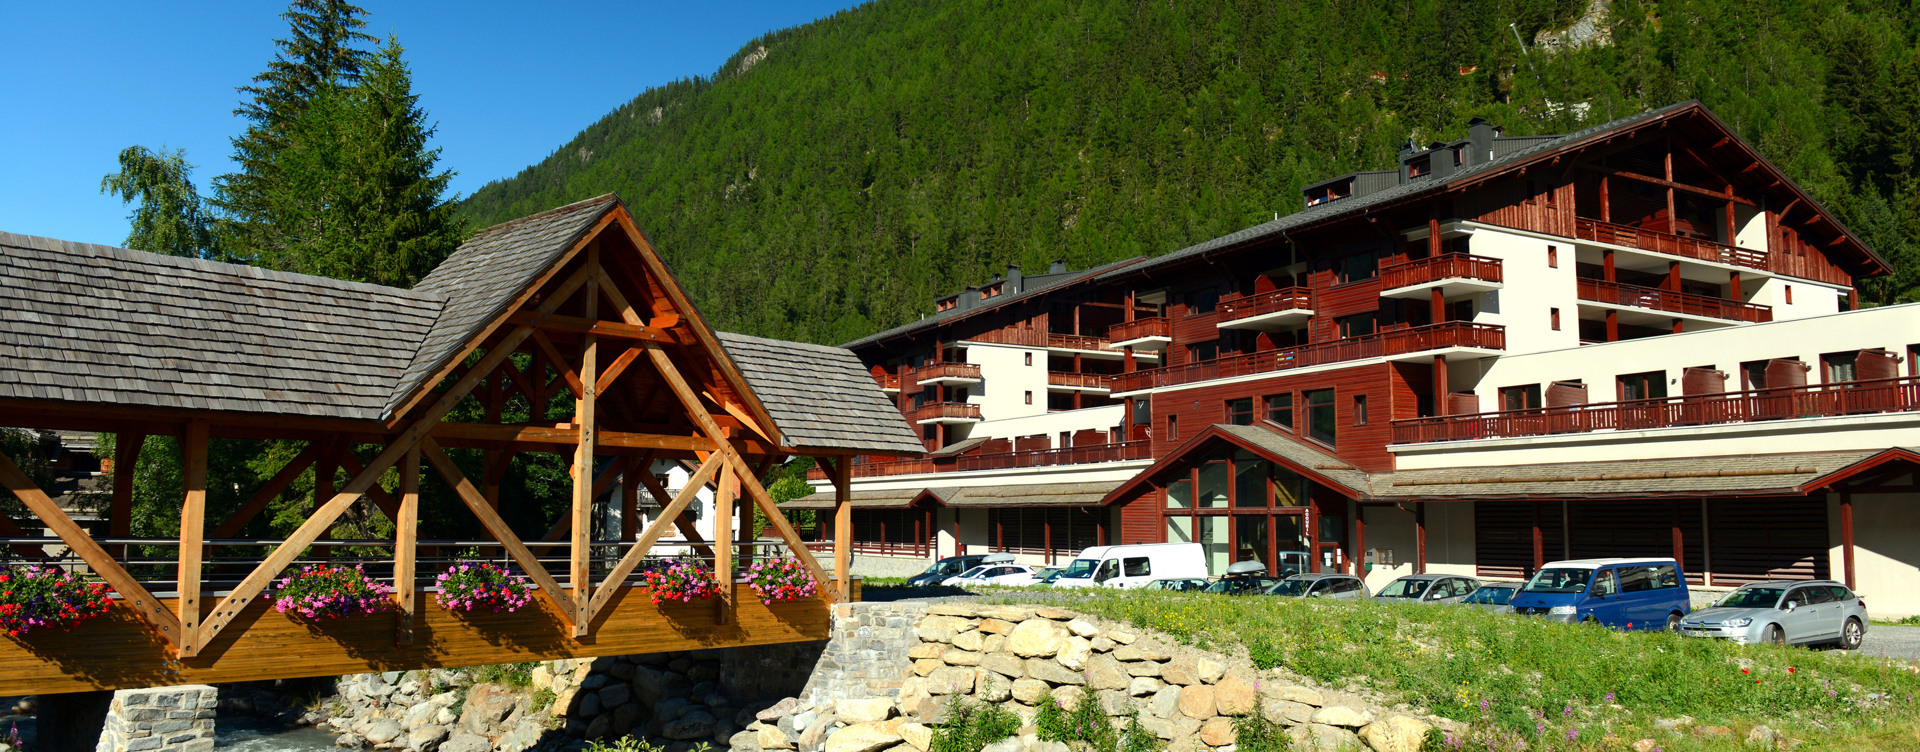 Ontdek ons sfeervolle resort in Vallorcine,
gelegen in de Franse Alpen